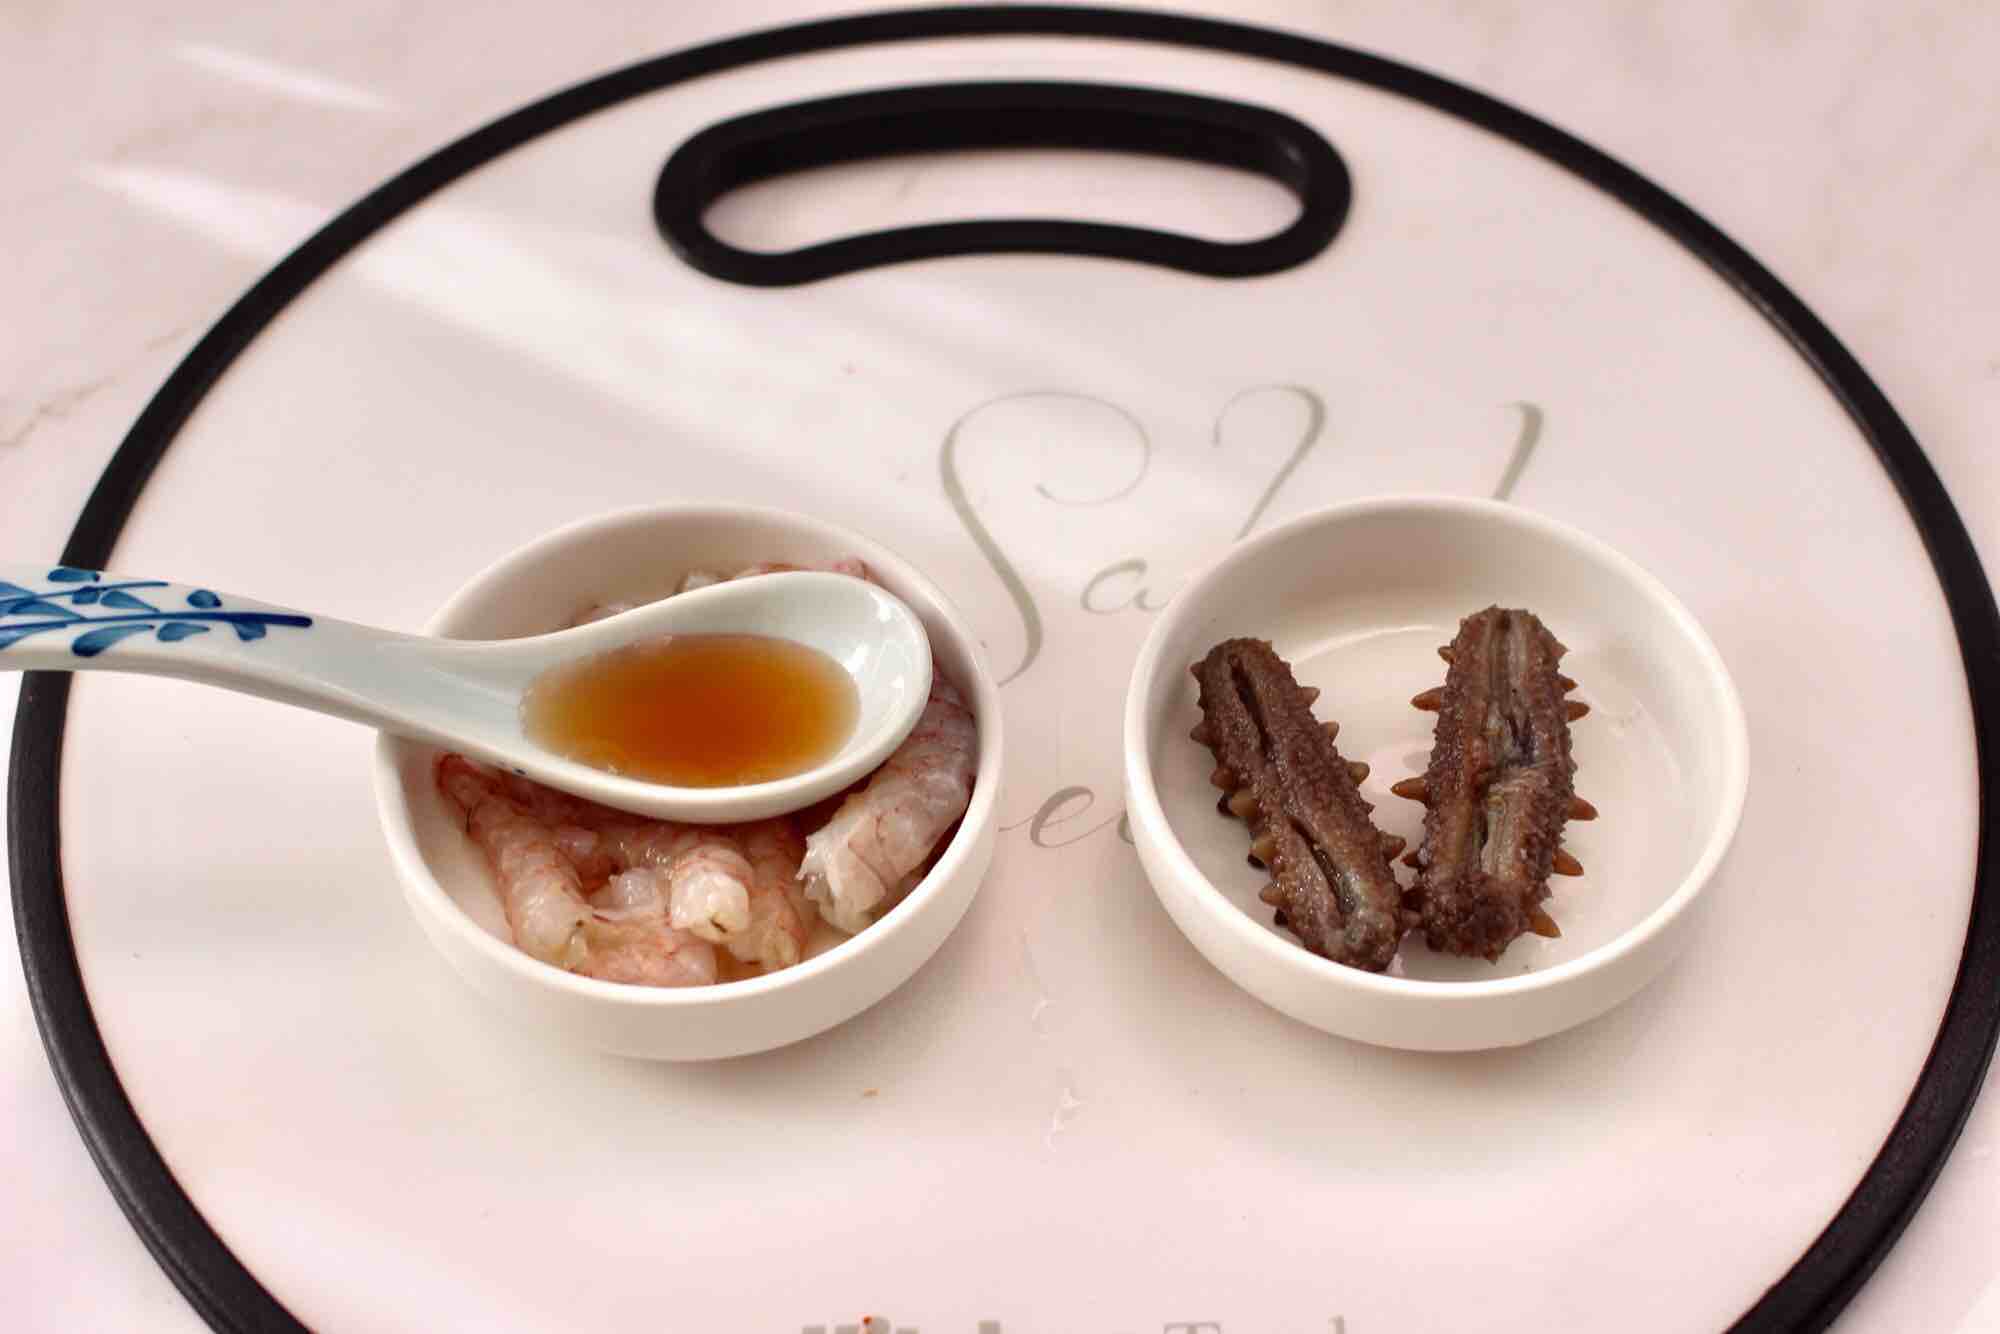 Shrimp and Sea Cucumber Casserole Congee recipe